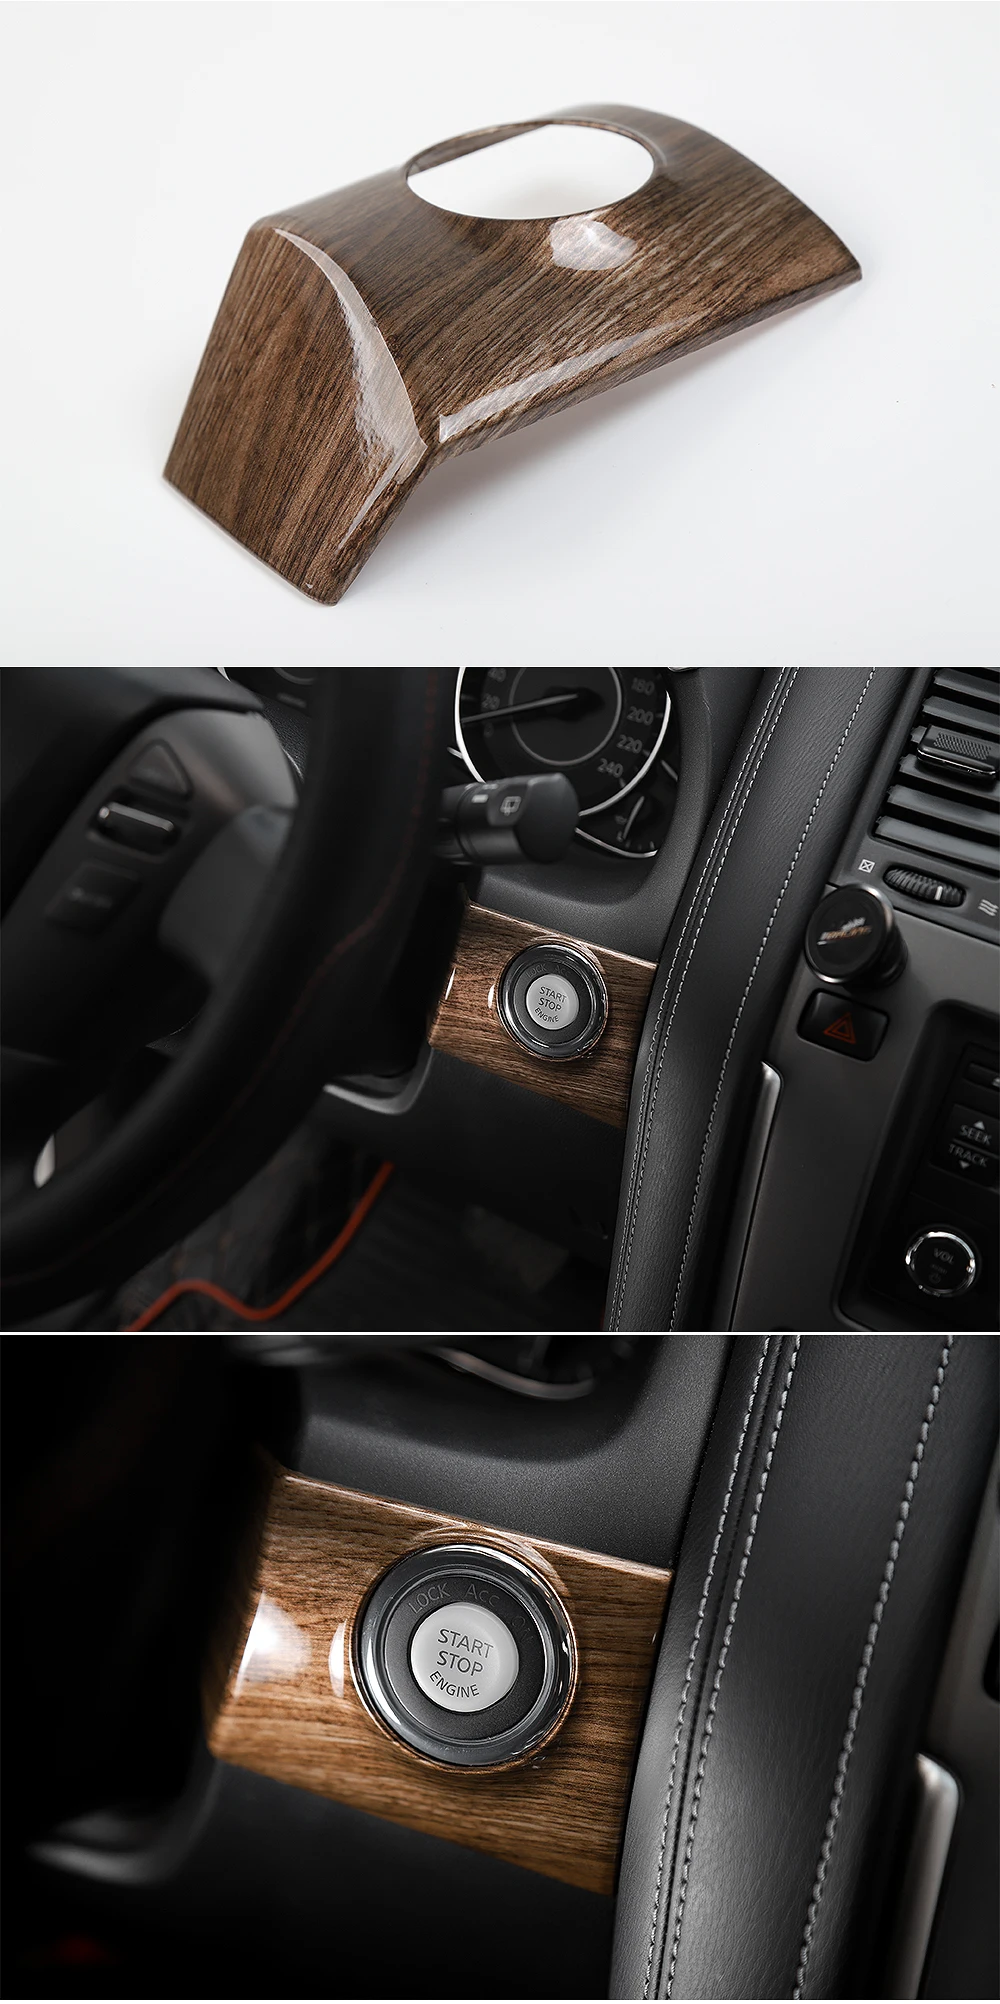 SHINEKA автомобильный двигатель кнопка запуска стоп накладка рамка подходит для Nissan Patrol Y62+ автомобильные аксессуары высокое качество